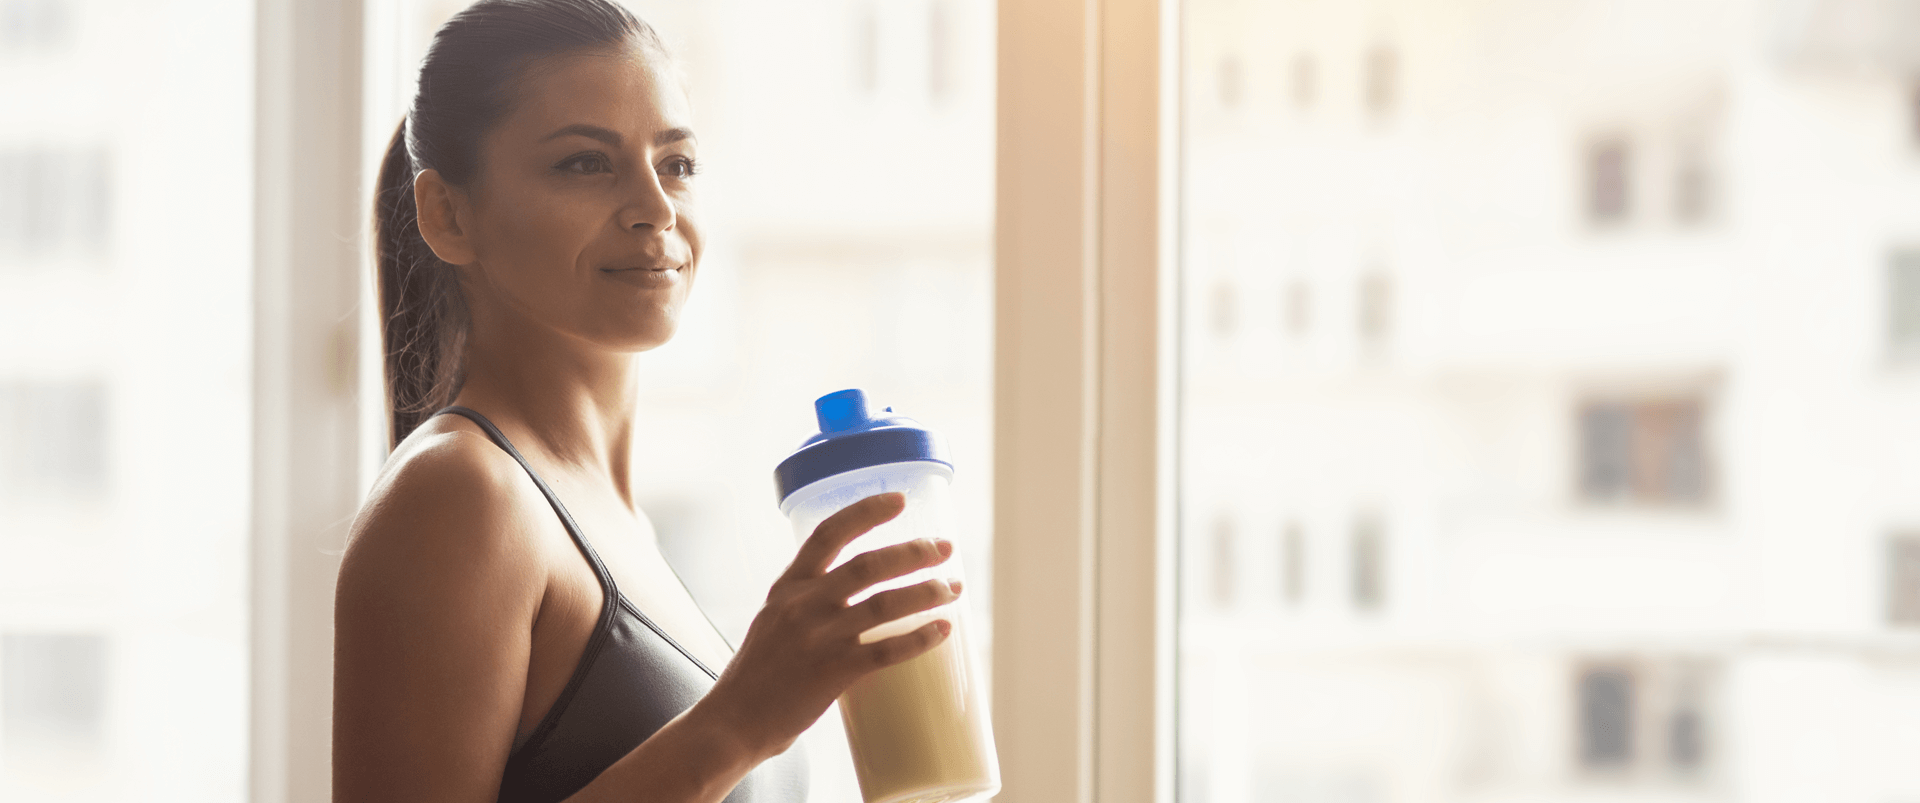 protein-shake-morning-desktop